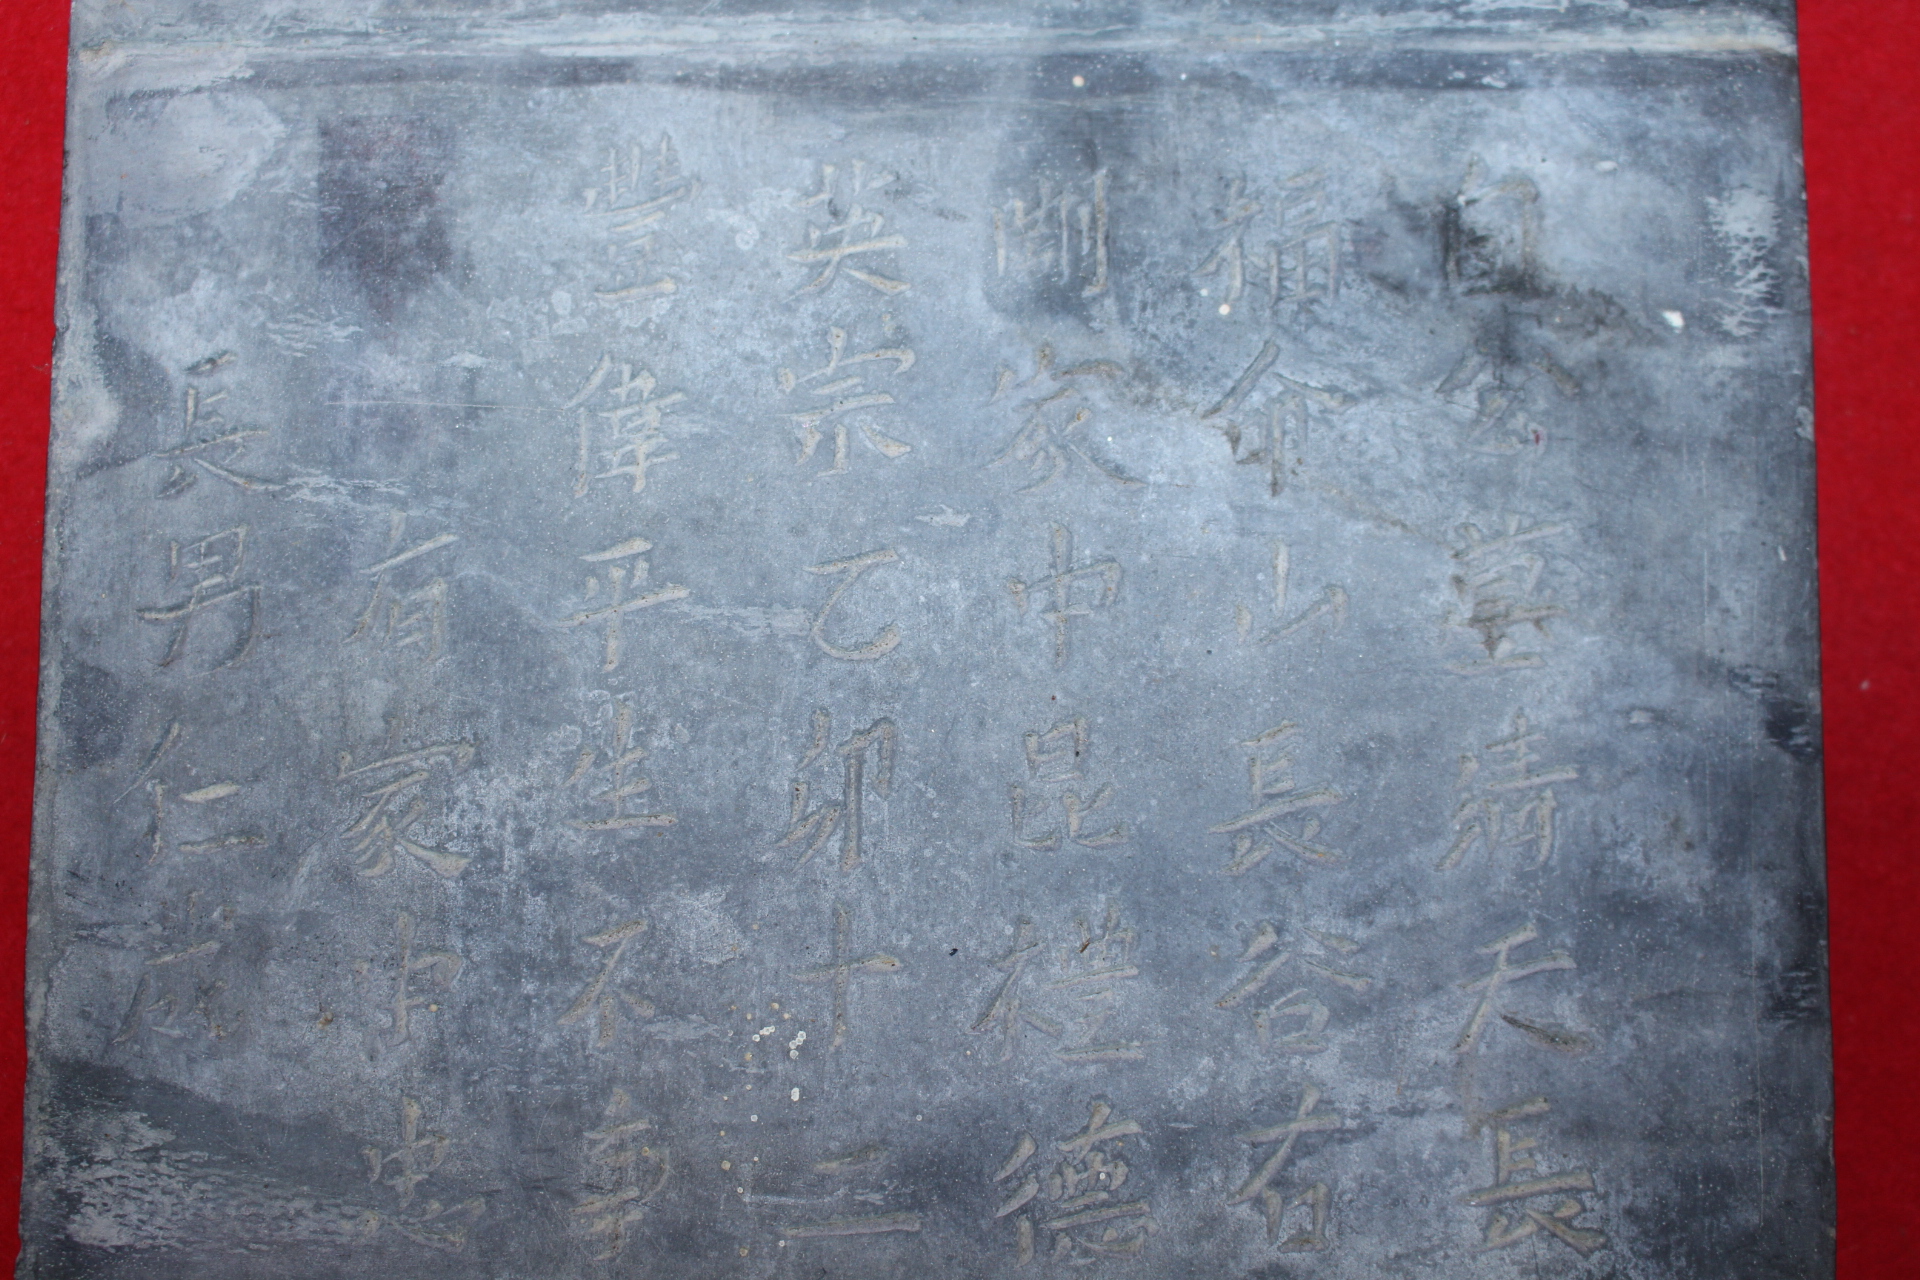 1459년(英宗乙卯) 중국 명나라시기 돌로된 백공지묘지(白公之墓誌)